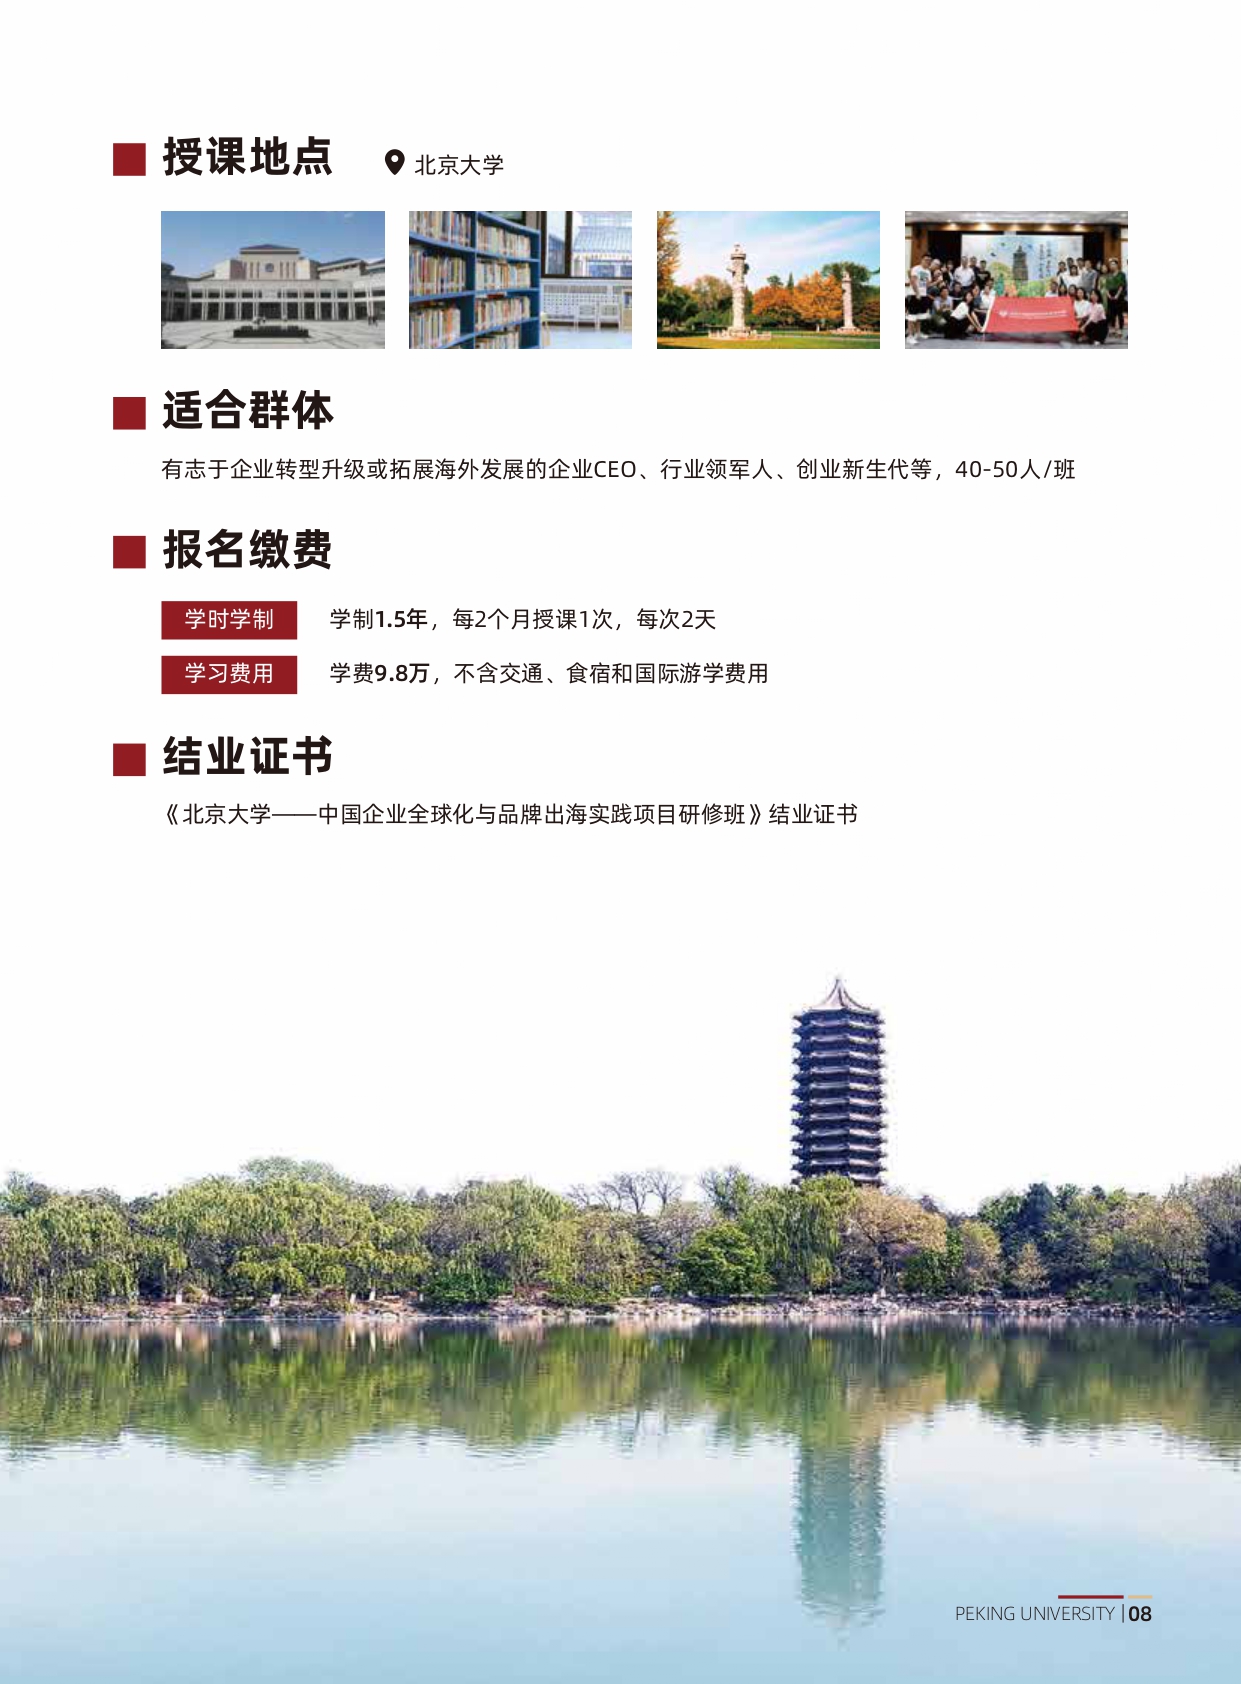 北京大学中国企业全球化与品牌出海实践项目研修班(1)_page-0009.jpg